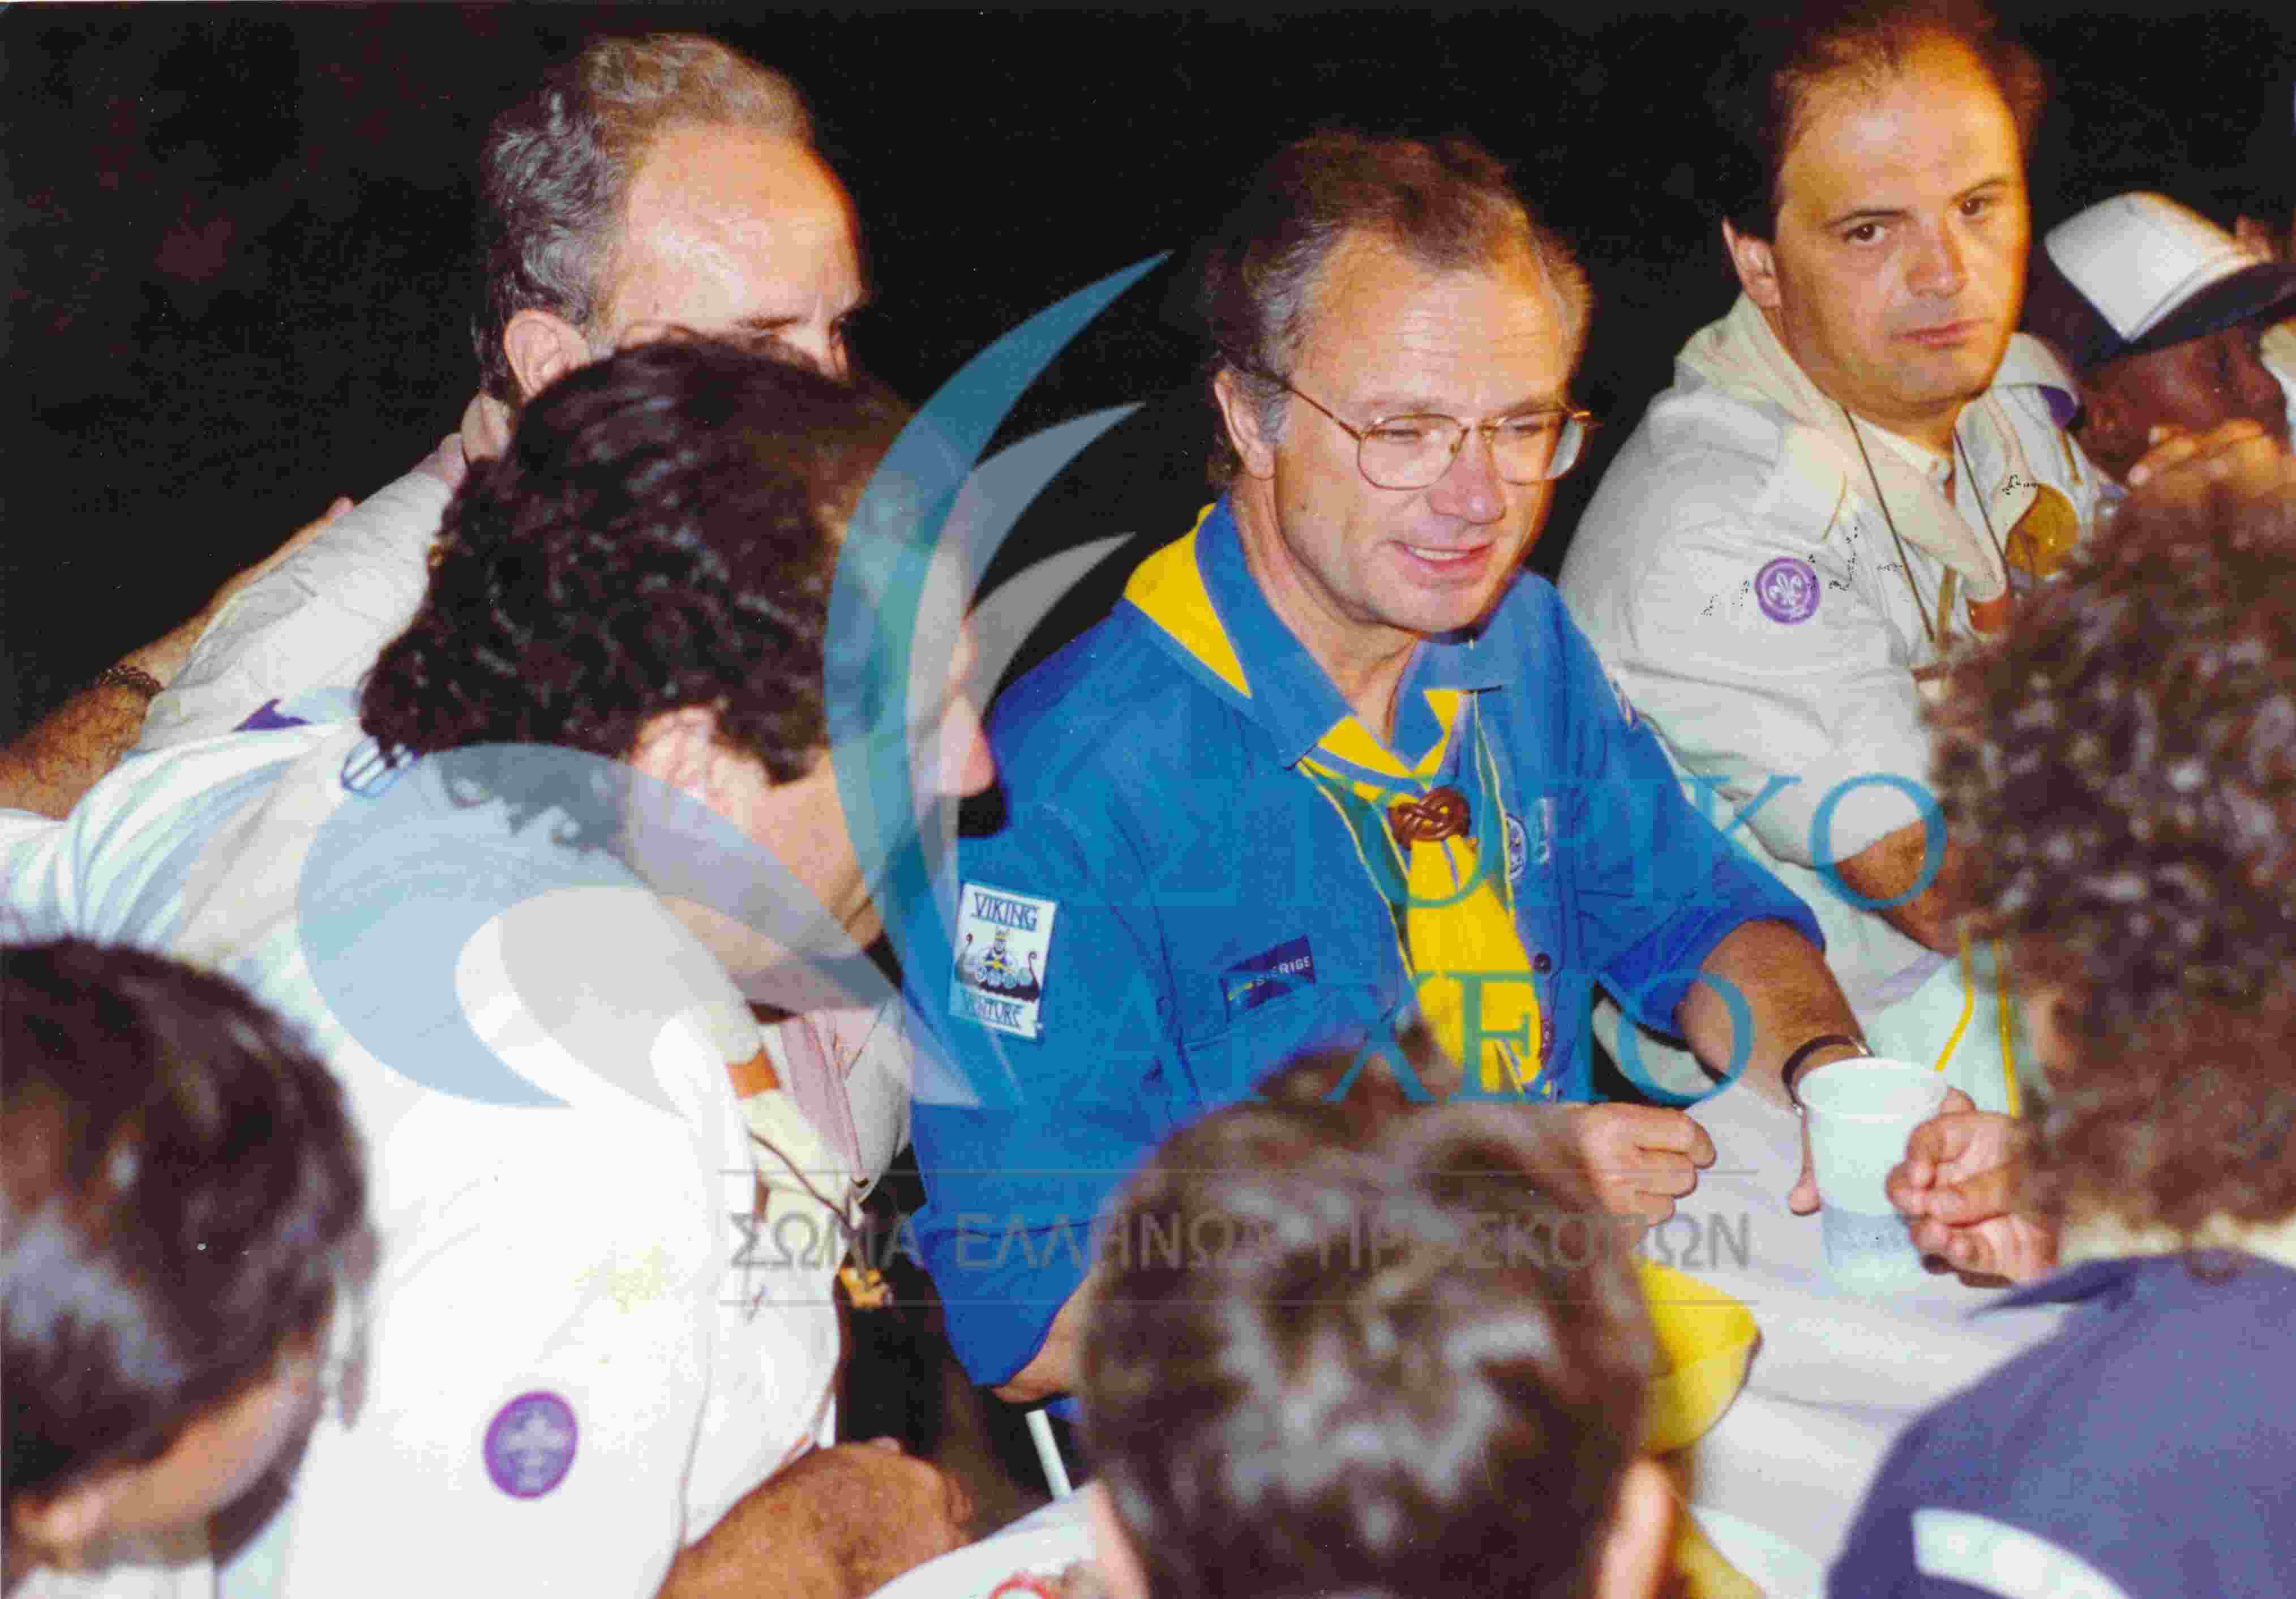 Ο Βασιλιάς της Σουηδίας Κάρολος Γουστάβος στο δείπνο που προσφέρθηκε στην κατασκήνωση των στελεχών της ΕΠ Κρήτης κατά τη διάρκεια της επίσκεψης στον Αγ. Νικόλαο για τη συνάντηση των μελών του Παγκοσμίου Ιδρύματος BP Fellows το 1993. Διακρίνεται ο Στ. Κοκκίνης ΠΕ Χανίων κι ο Γ. Χουρδάκης